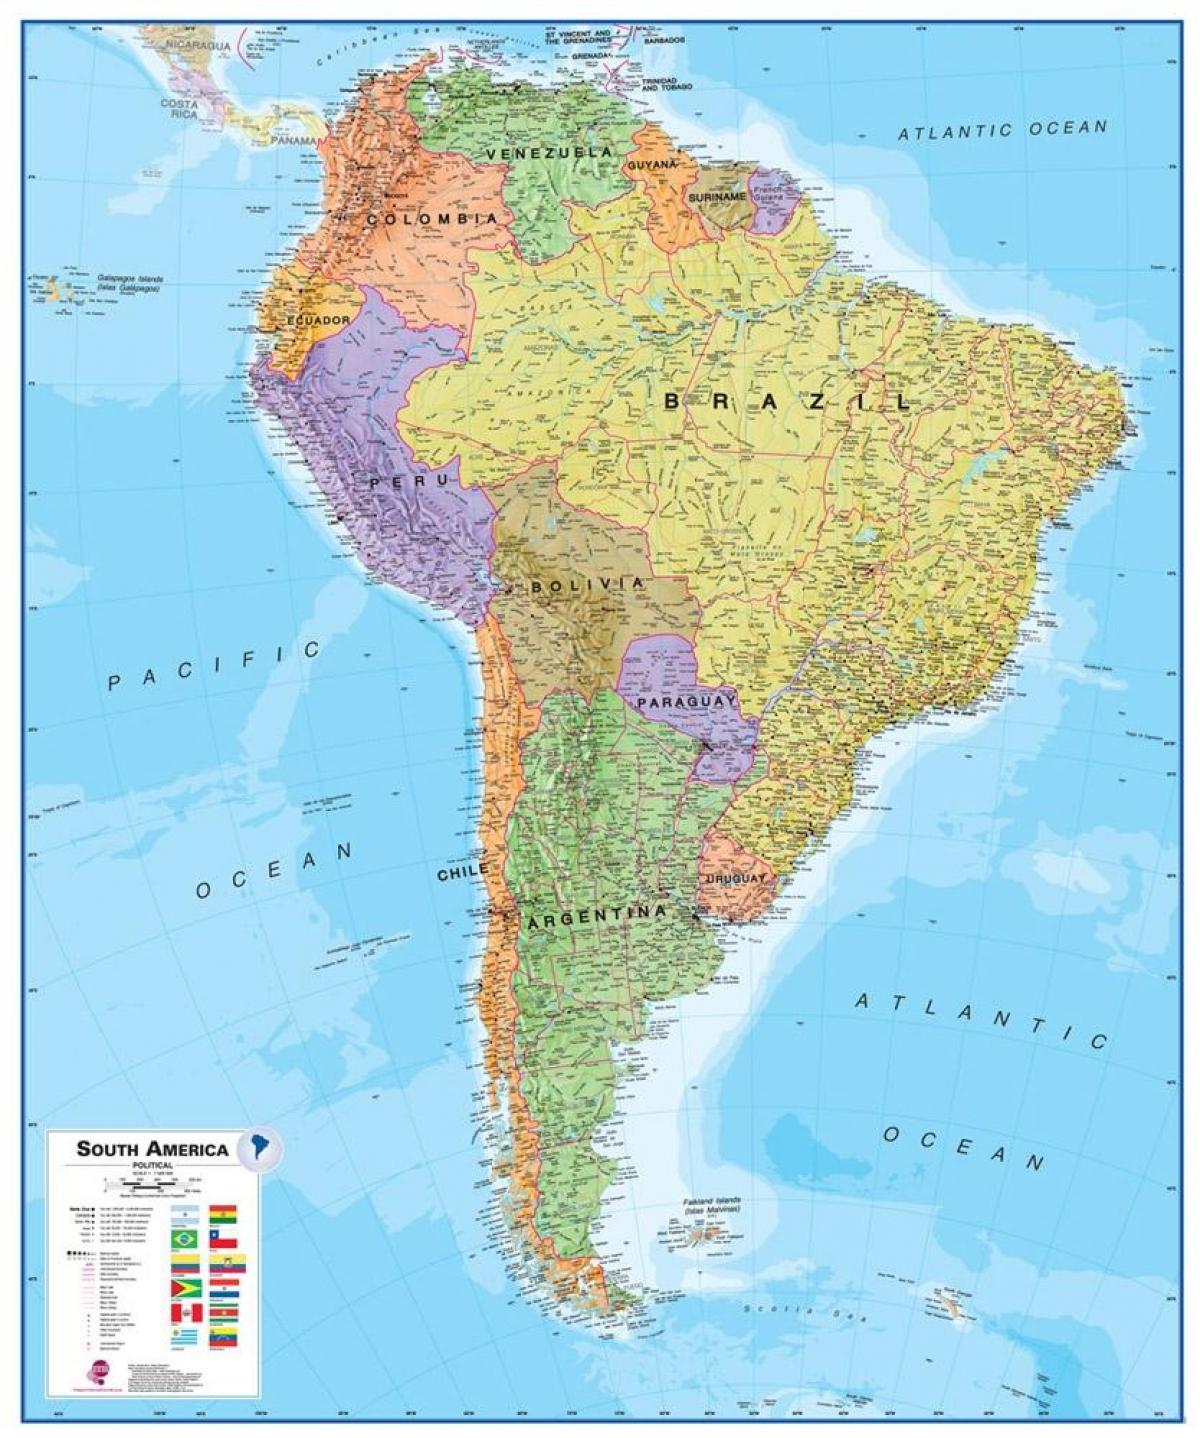 mapi Peruu južnoj americi.